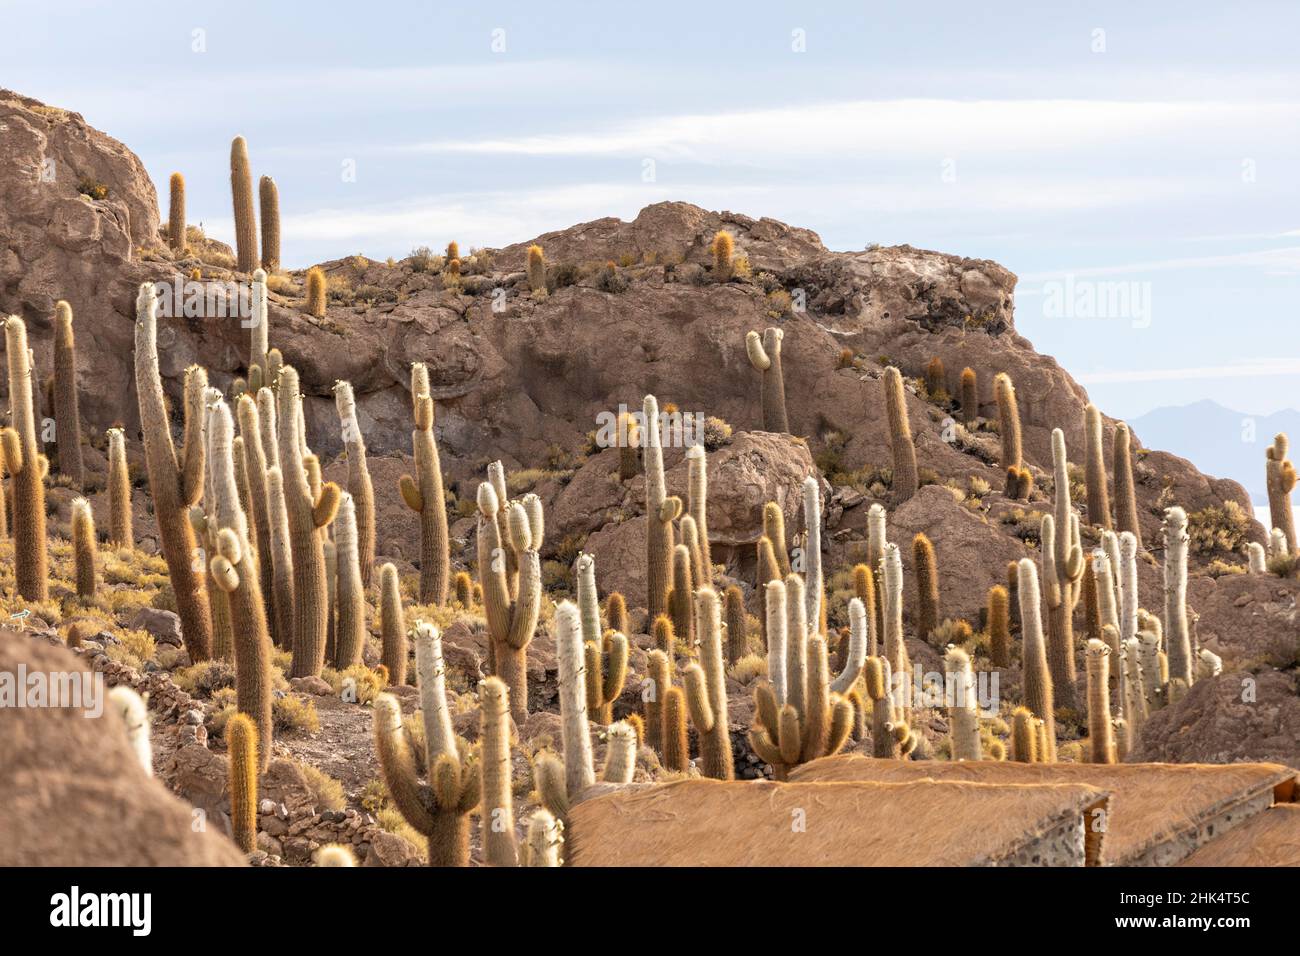 Cactus de Cardon (Echinopsis atacamensis), poussant près de l'entrée de l'île Incahuasi, sur le Salar de Uyuni, Bolivie, Amérique du Sud Banque D'Images